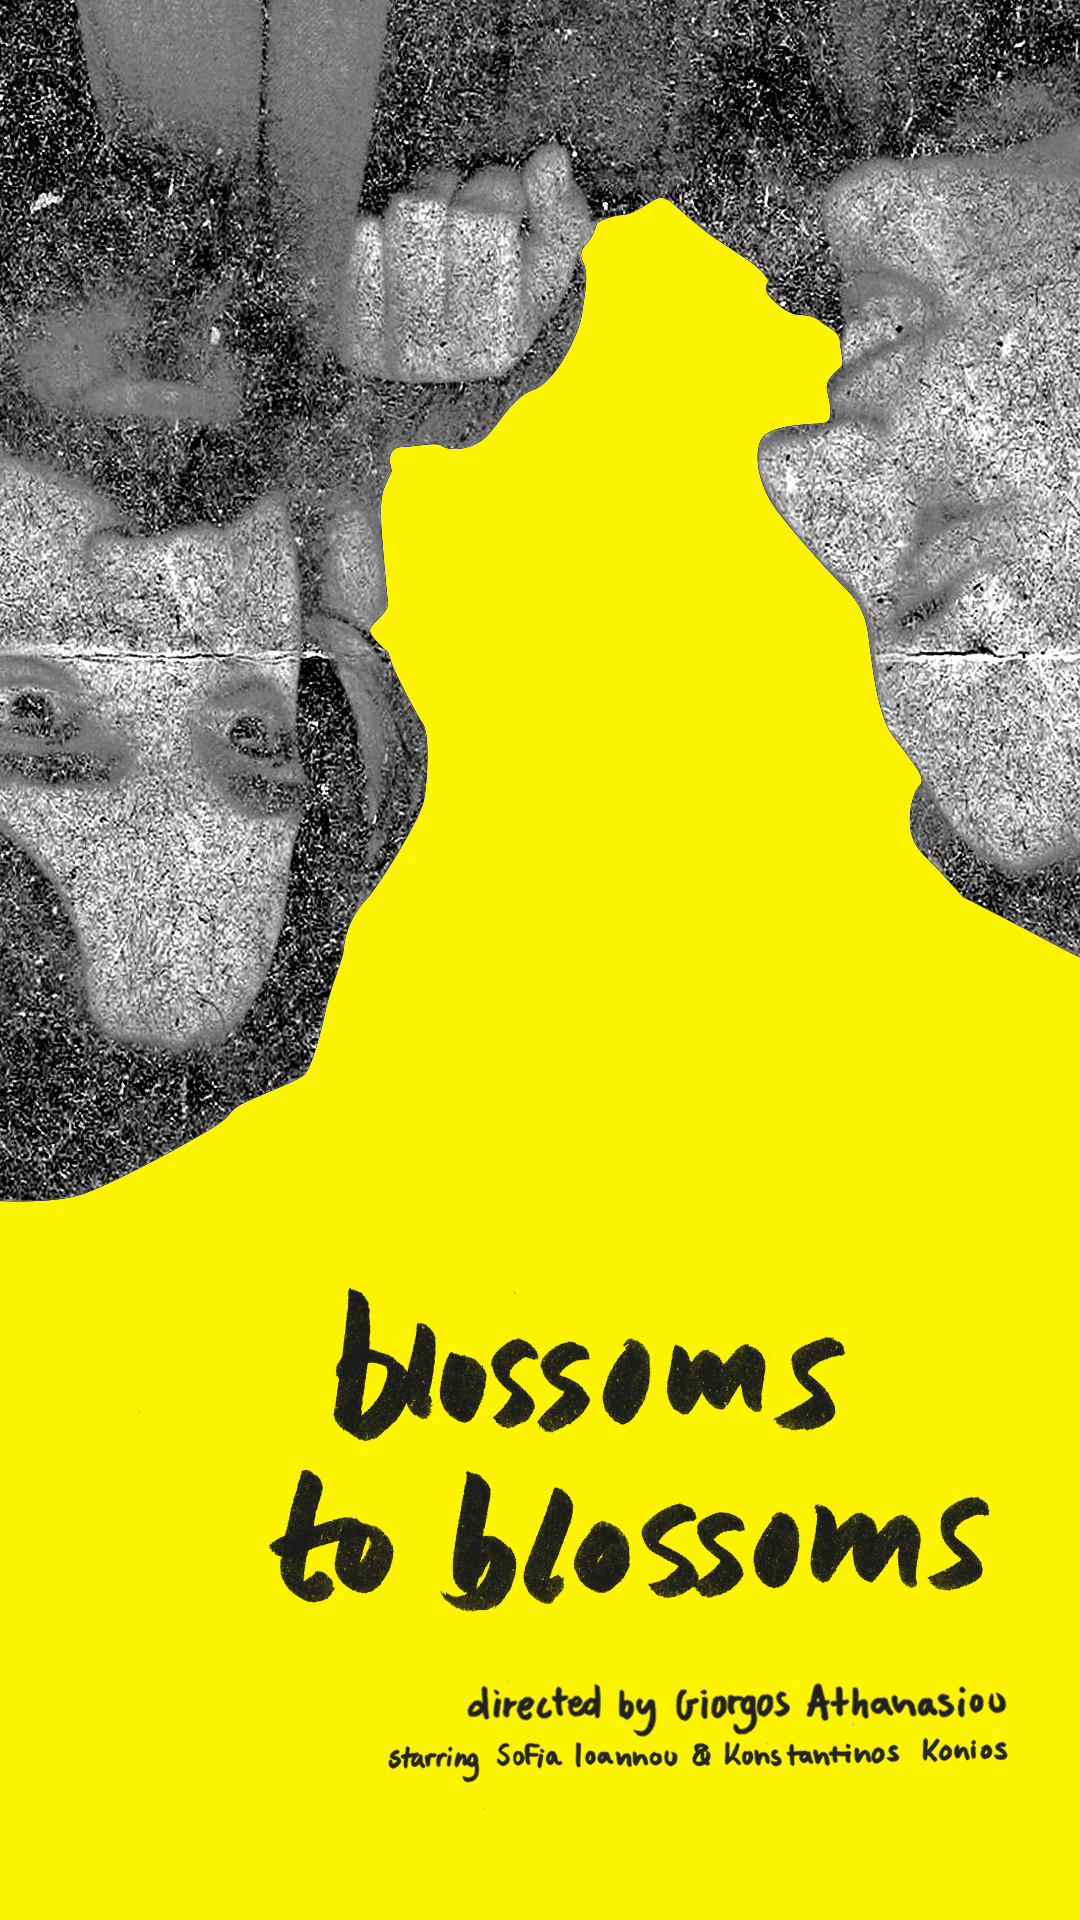 blossomstoblossoms digitalposter